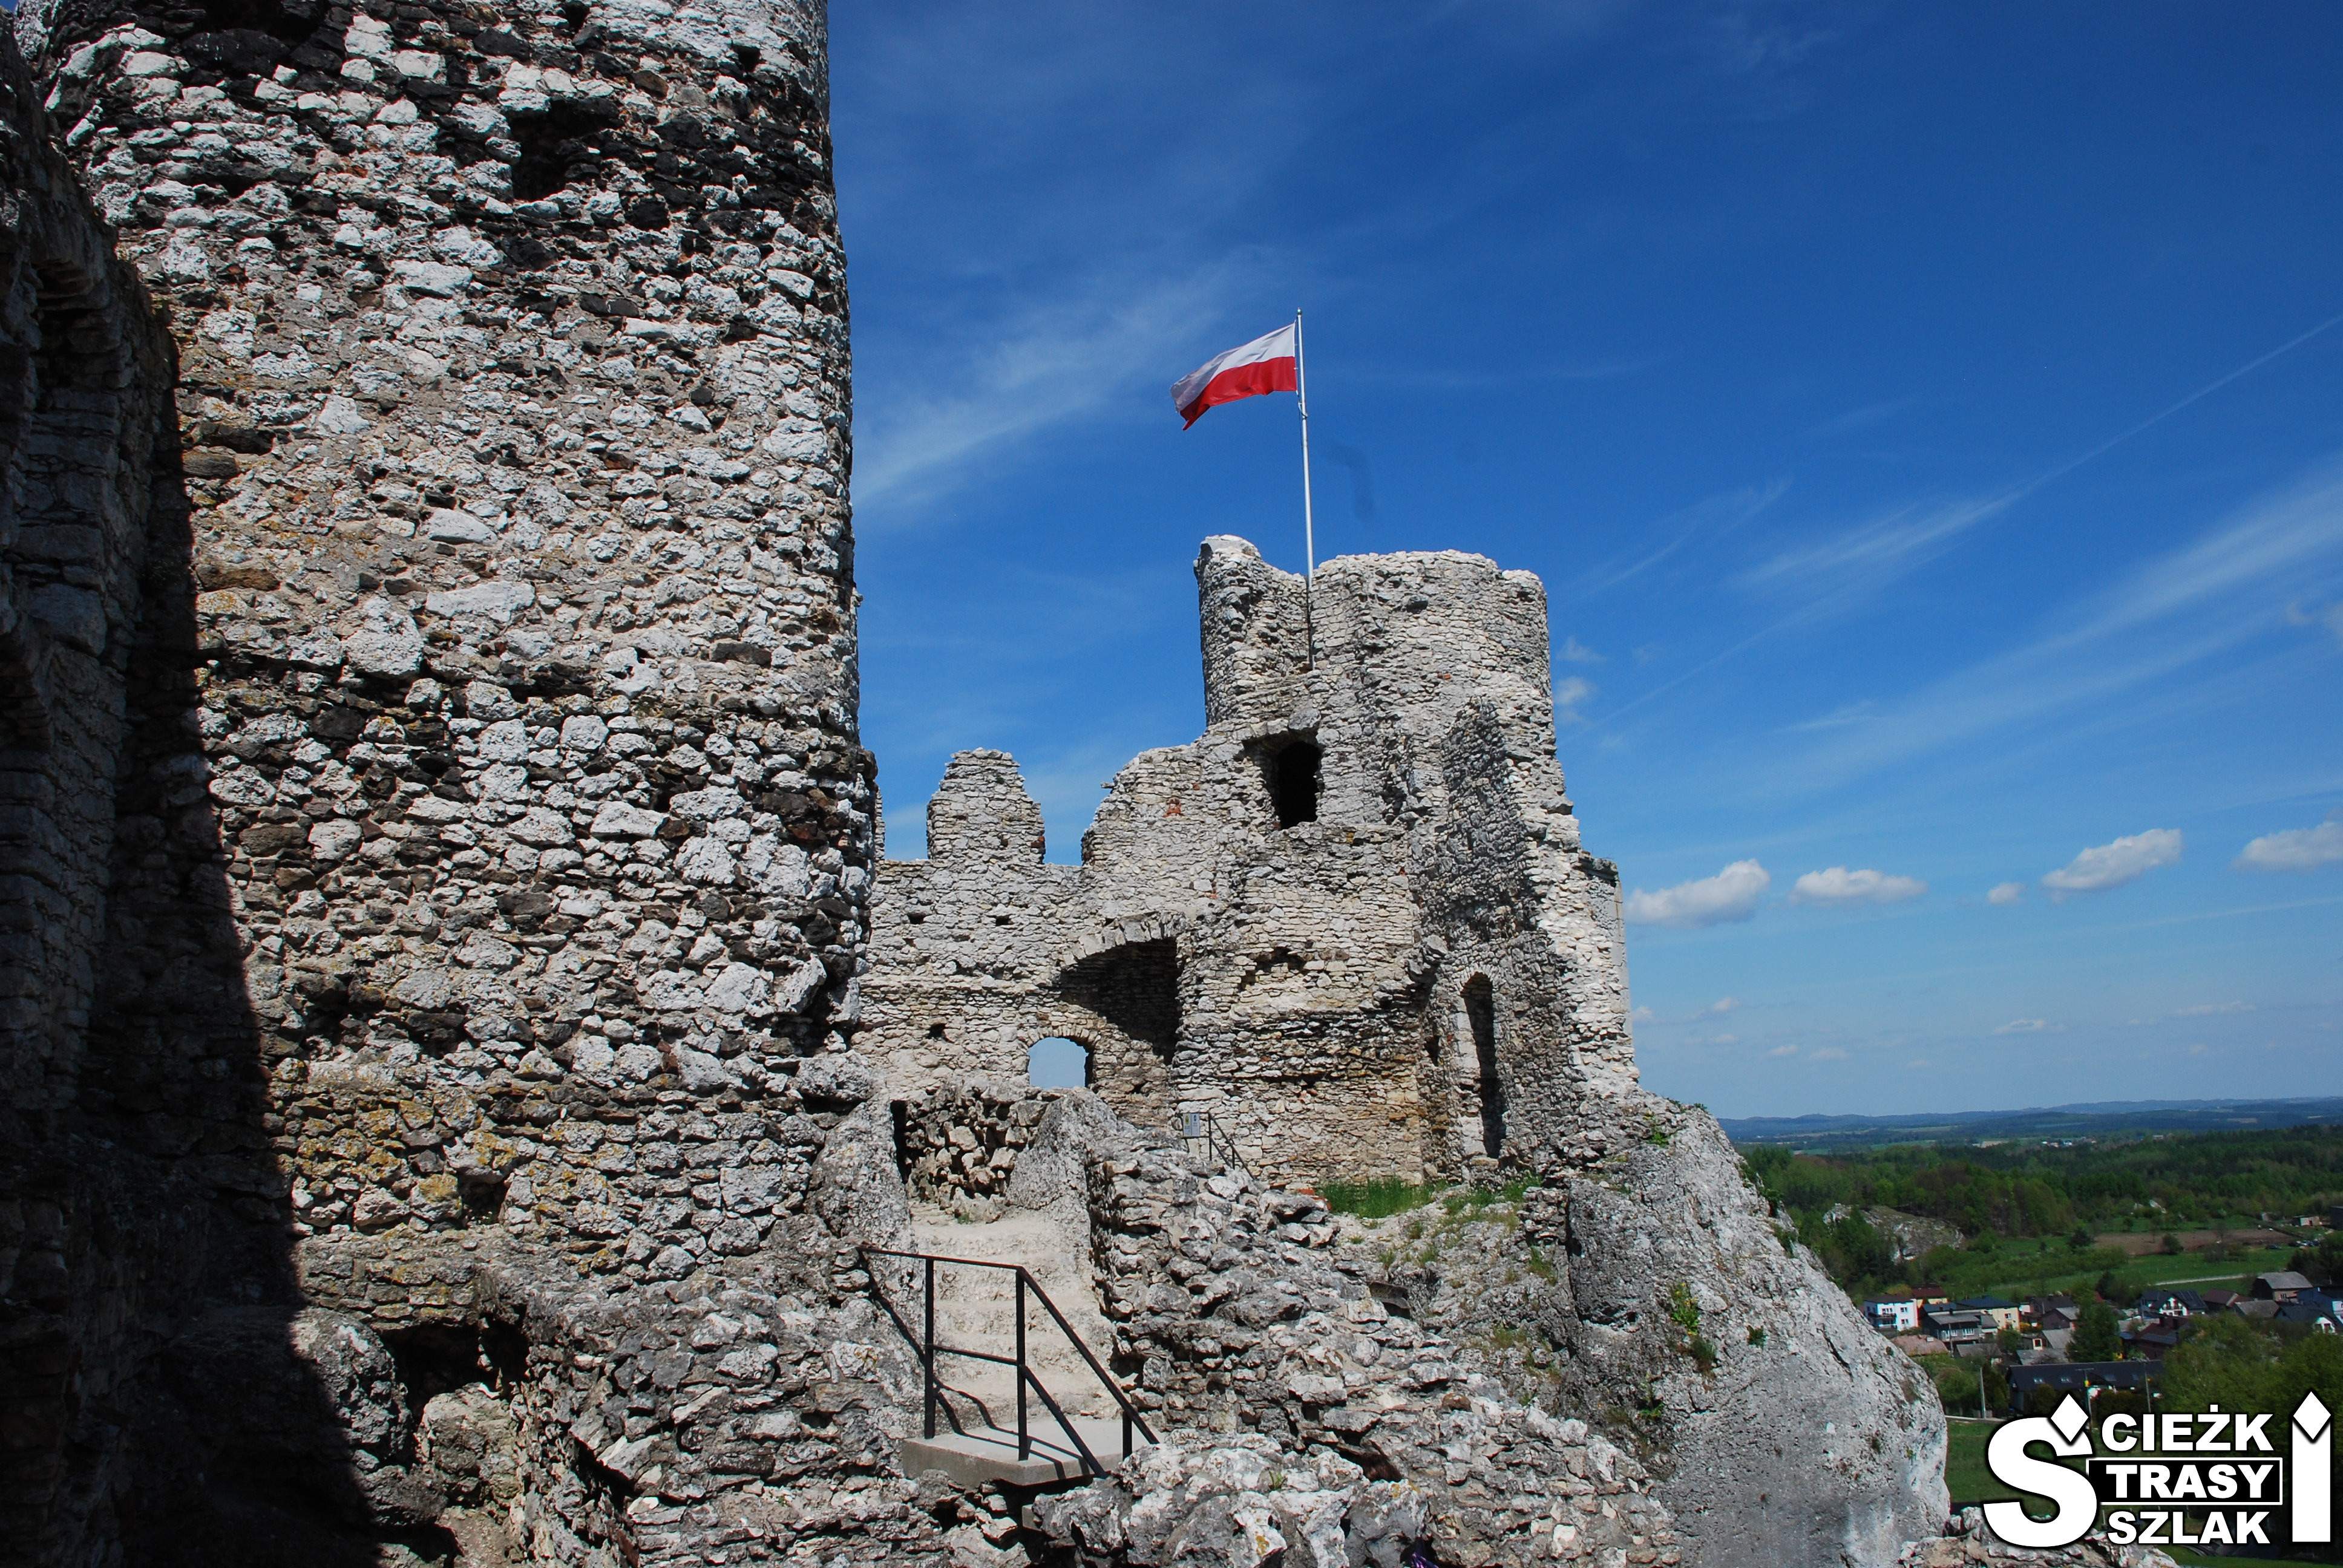 Flaga Polski na szczycie cylindrycznej wieży wkomponowanej w kamienne ściany Zamku Ogrodzieniec w Podzamczu